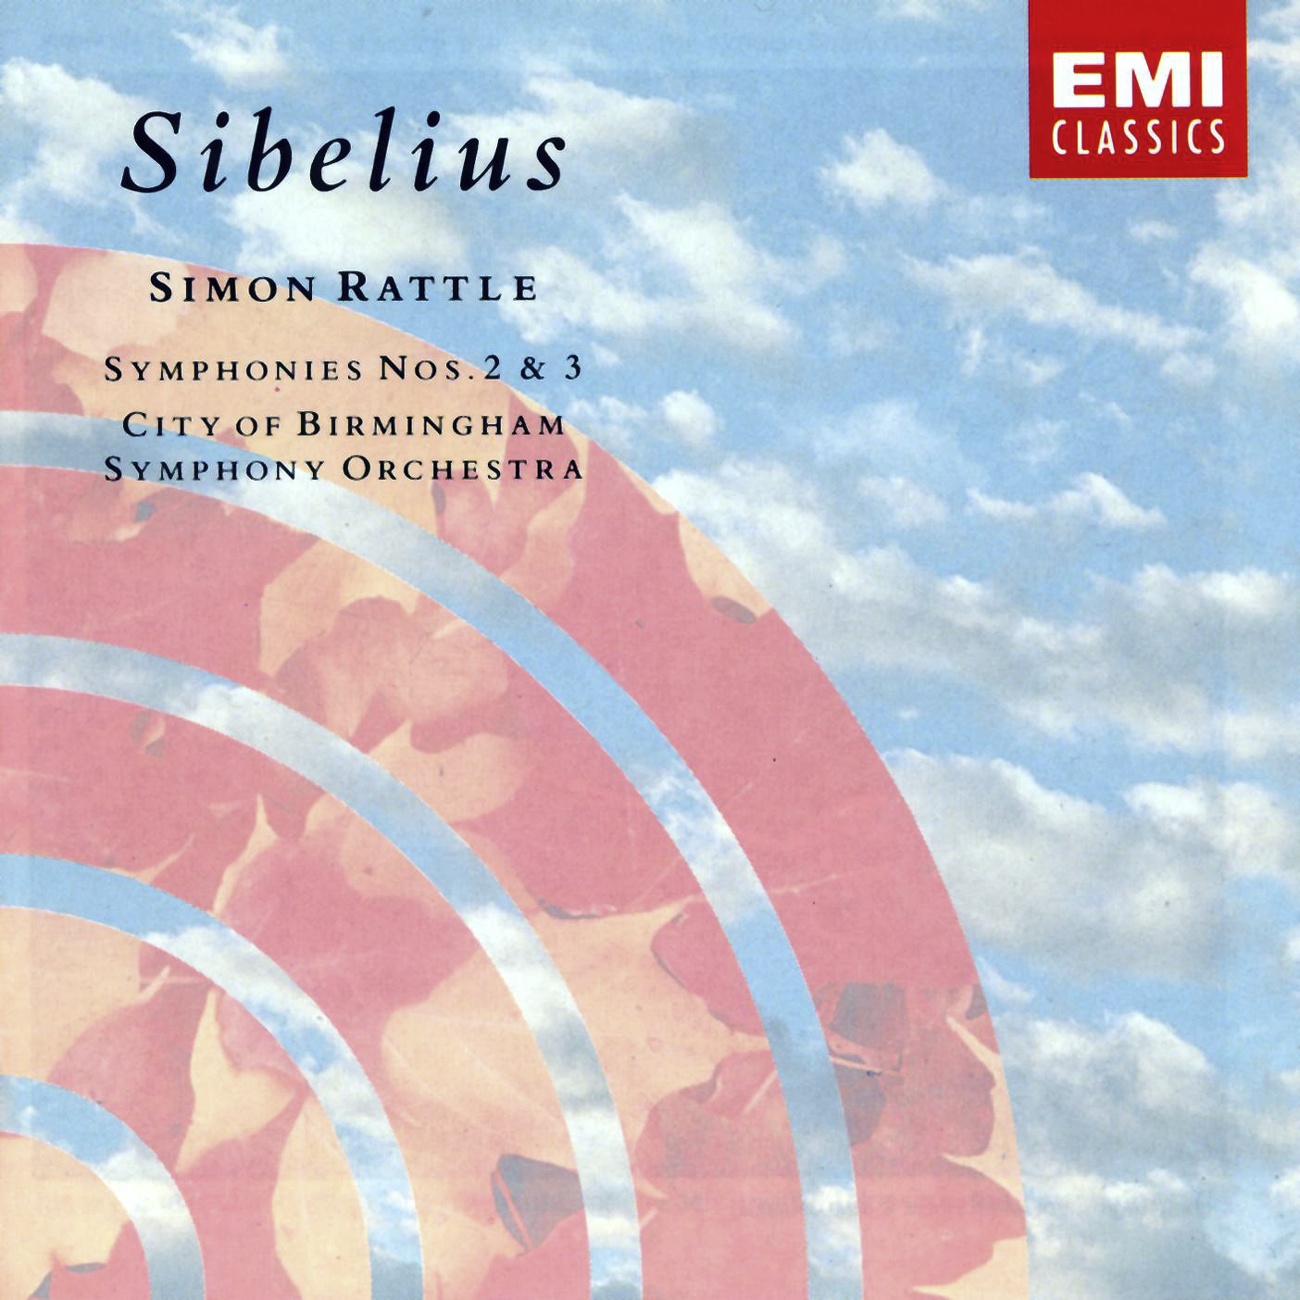 Sibelius: Symphony No. 2 in D, Op. 43: I. Allegretto